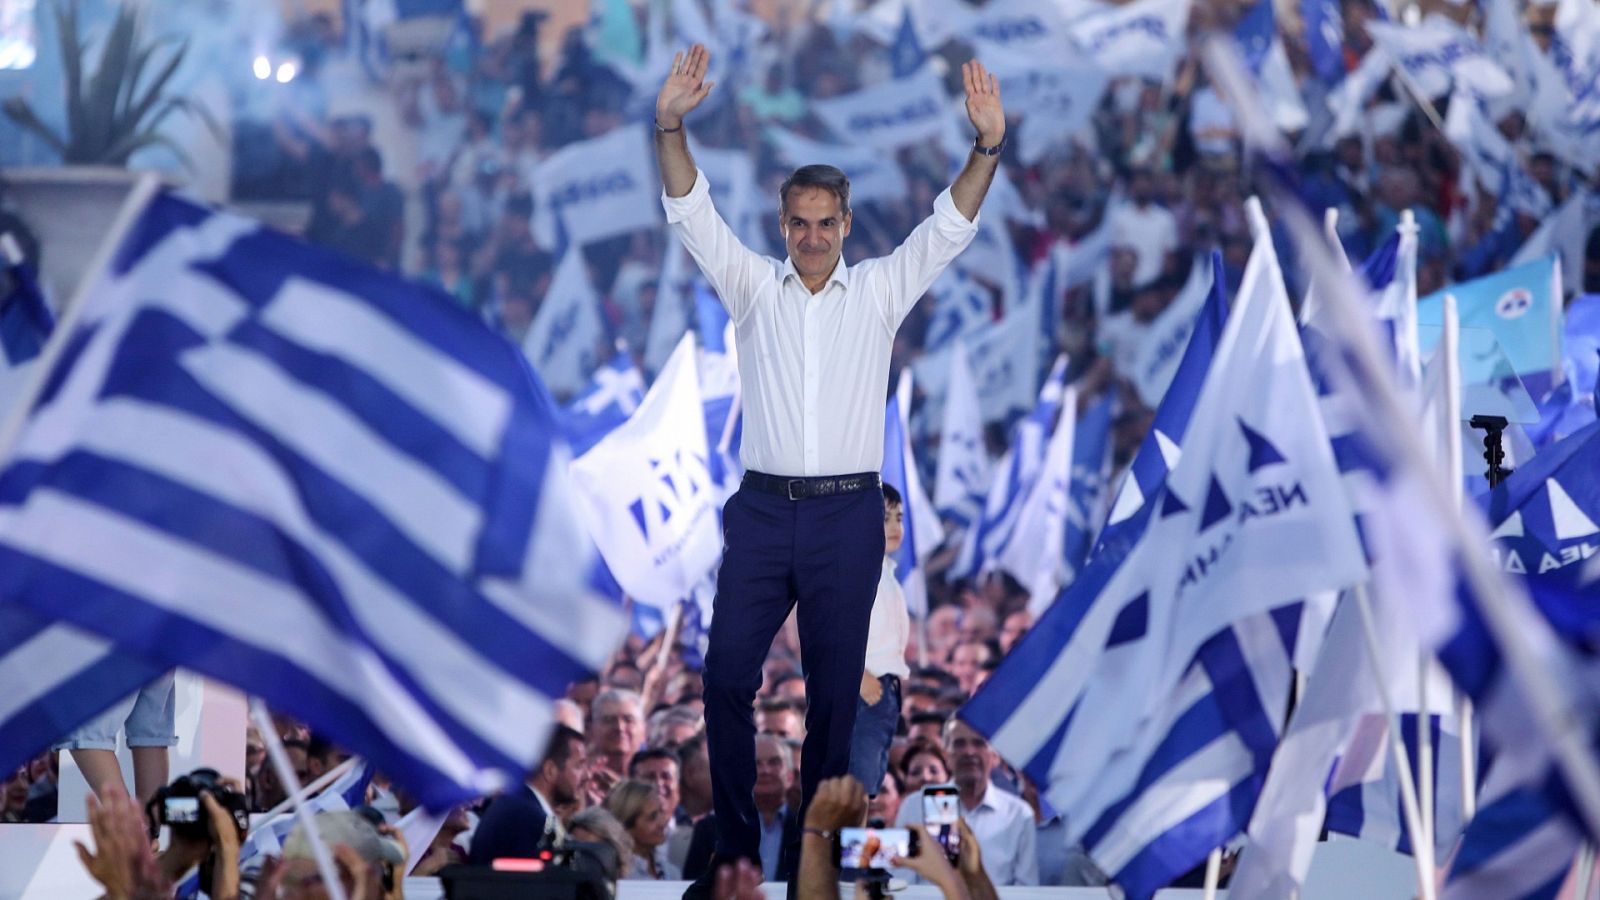 Elecciones en Grecia | La sociedad griega se desencanta con la política